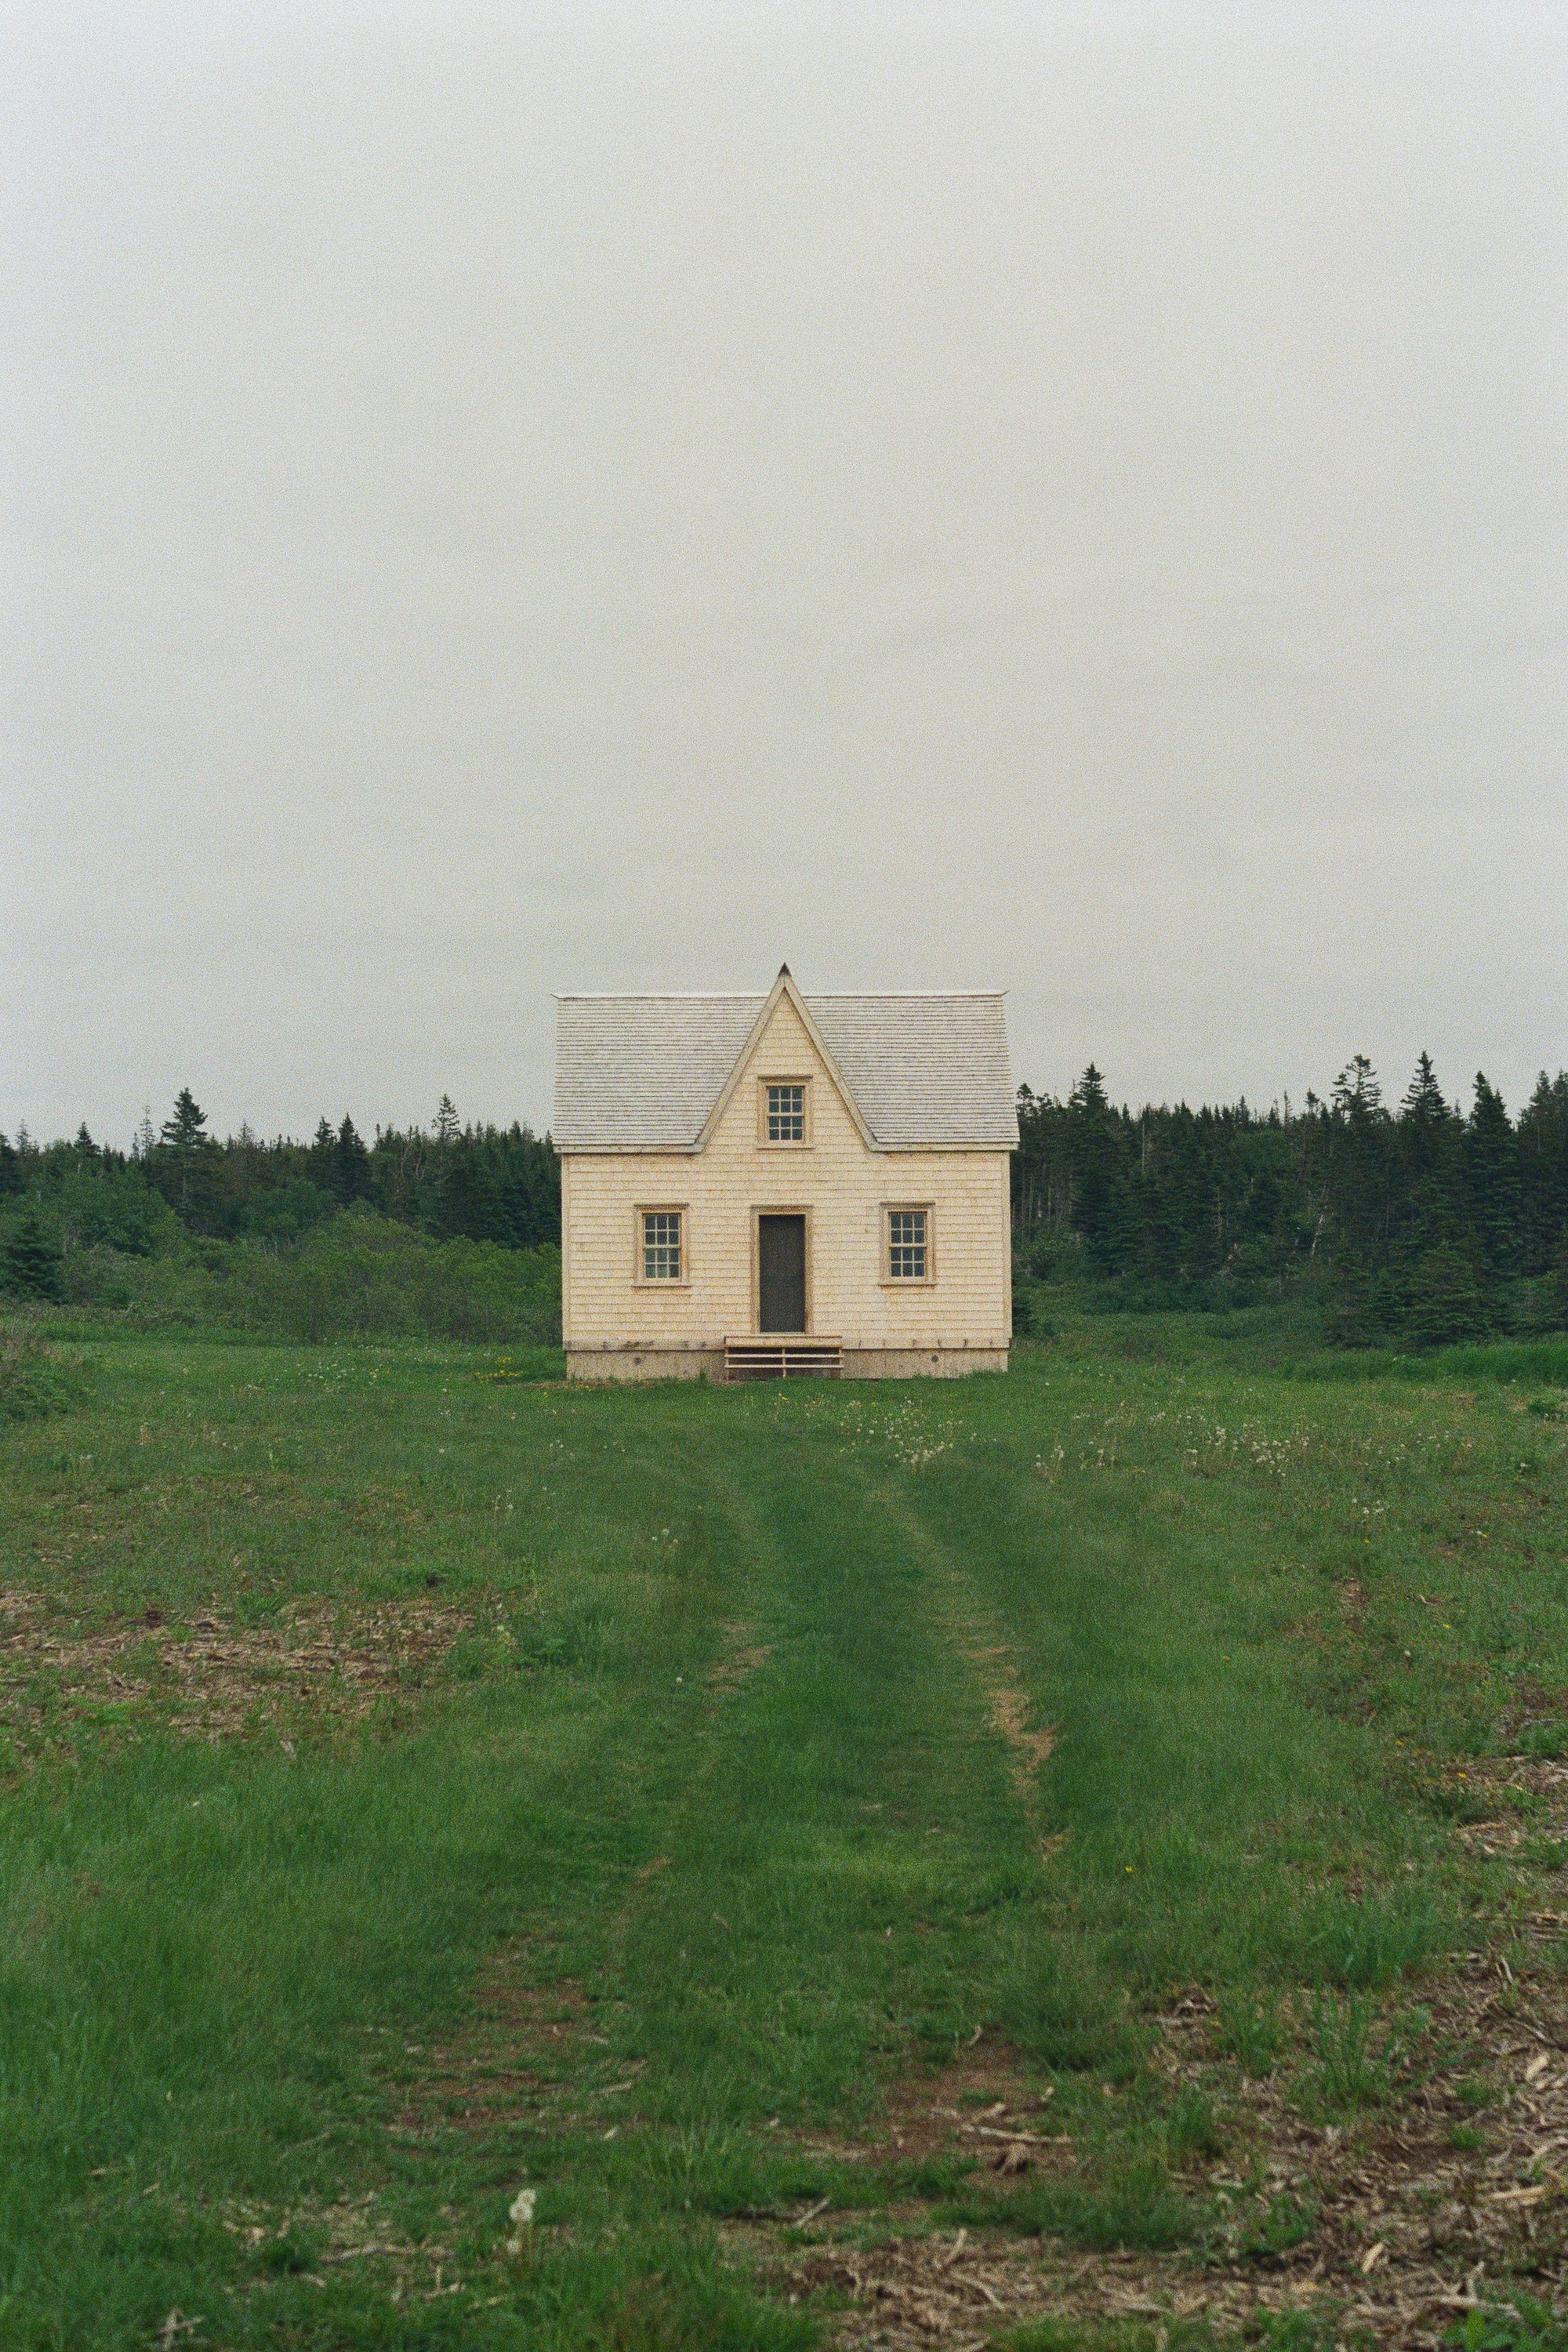 An Empty House